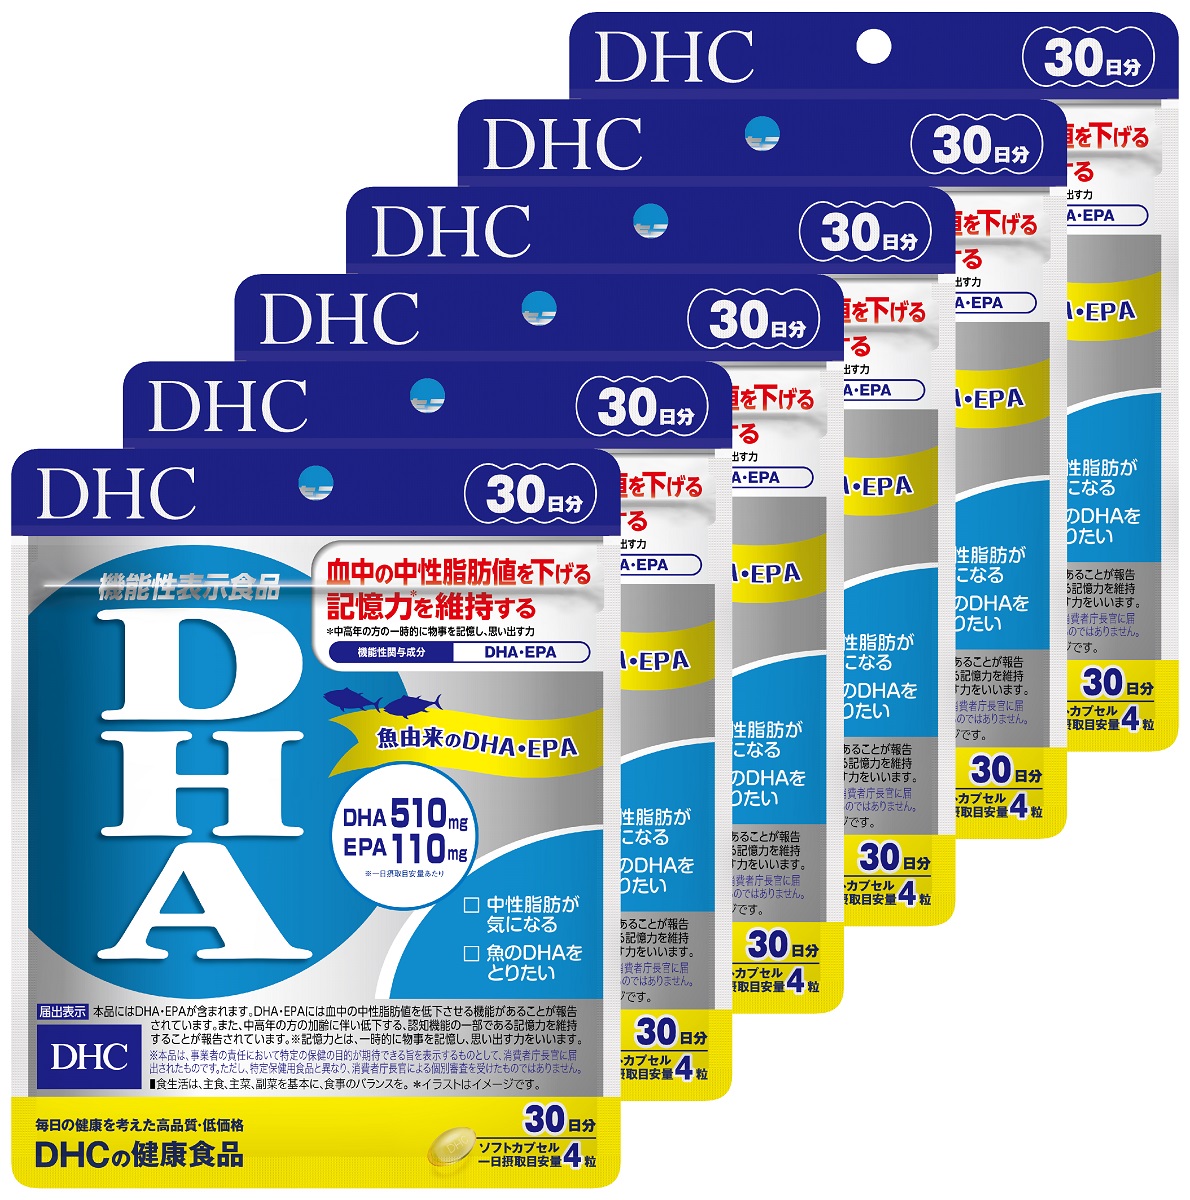 血中の中性脂肪値を低下させる 魚由来のDHA EPA配合のサプリメントです ふるさと納税 DHC サプリメント 新しいブランド 第一ネット 機能性表示食品 30日分 DHA 6ヶ月分セット